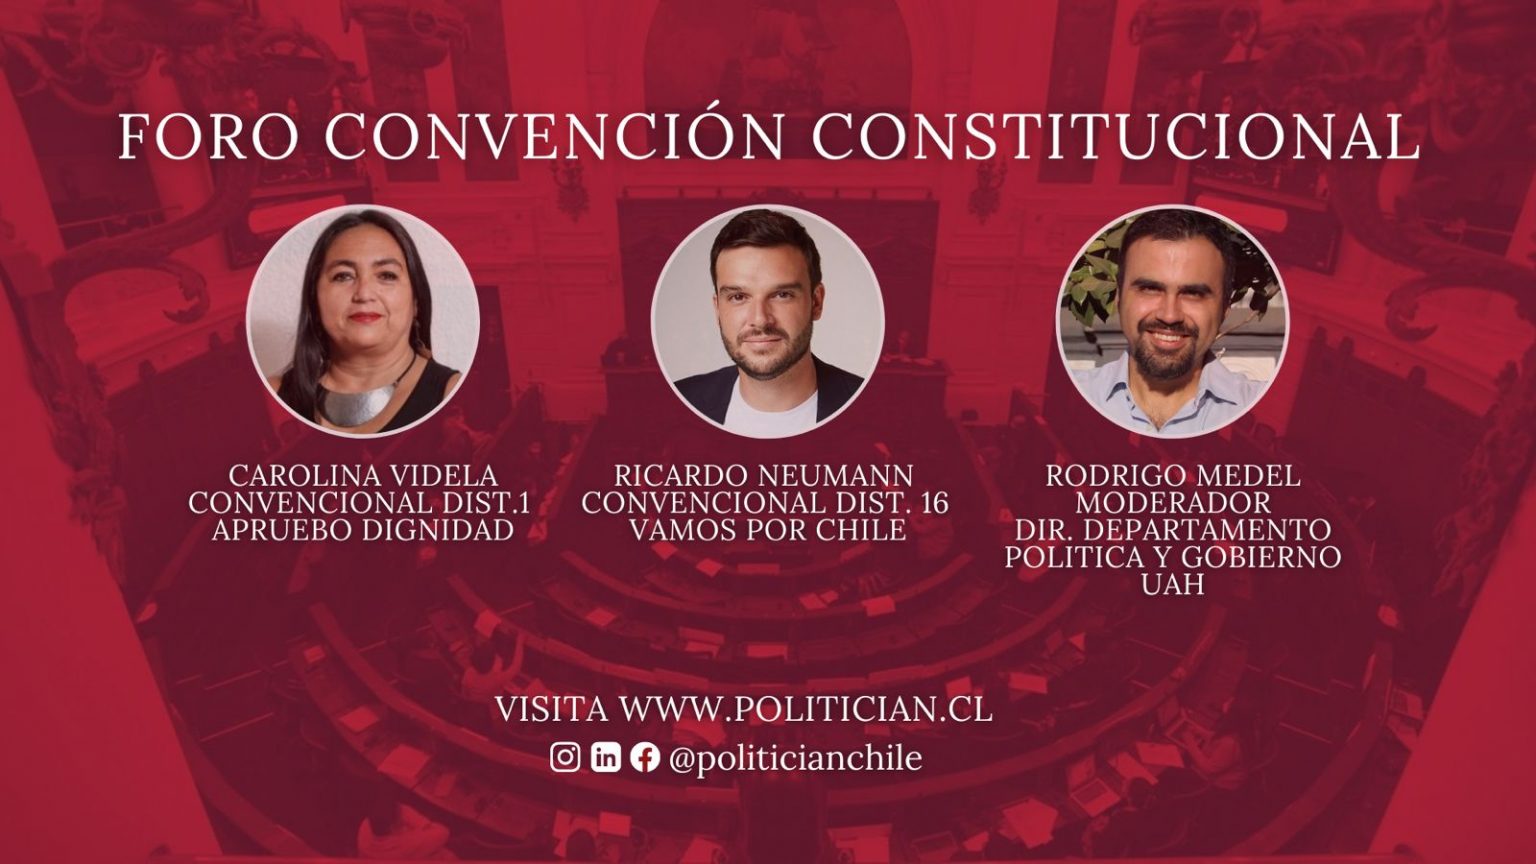 Universidad Alberto Hurtado convoca a Foro Convención Constitucional